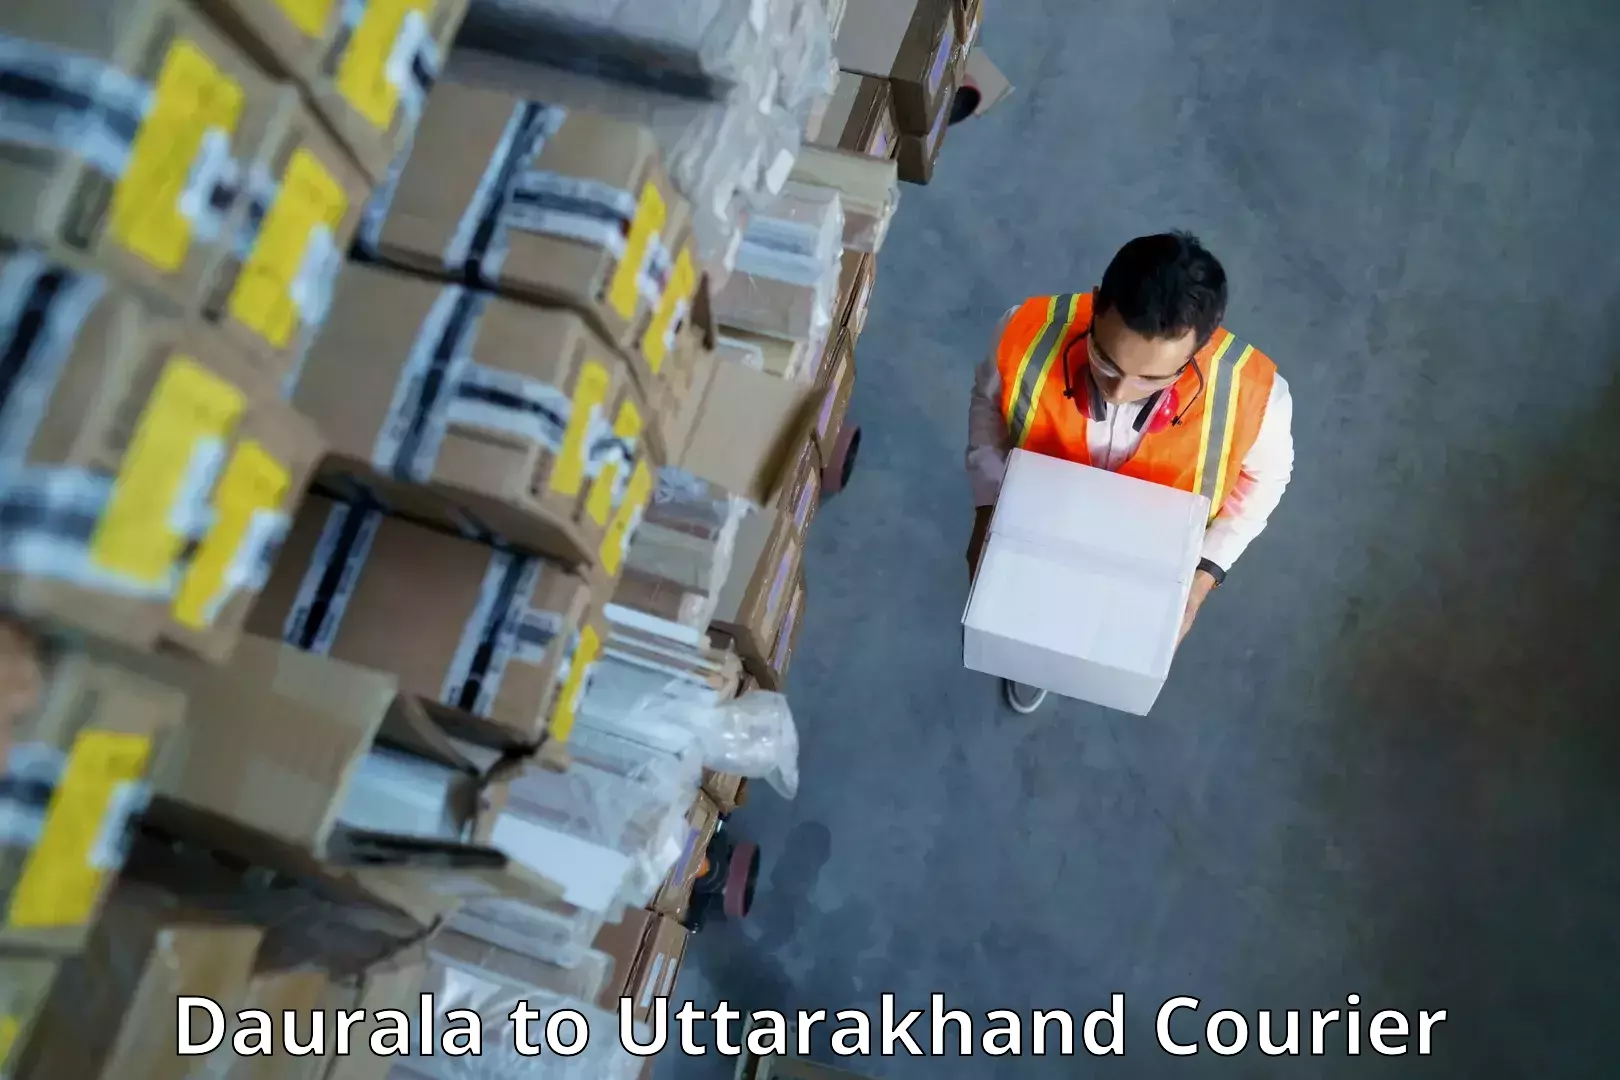 International parcel service Daurala to Kashipur